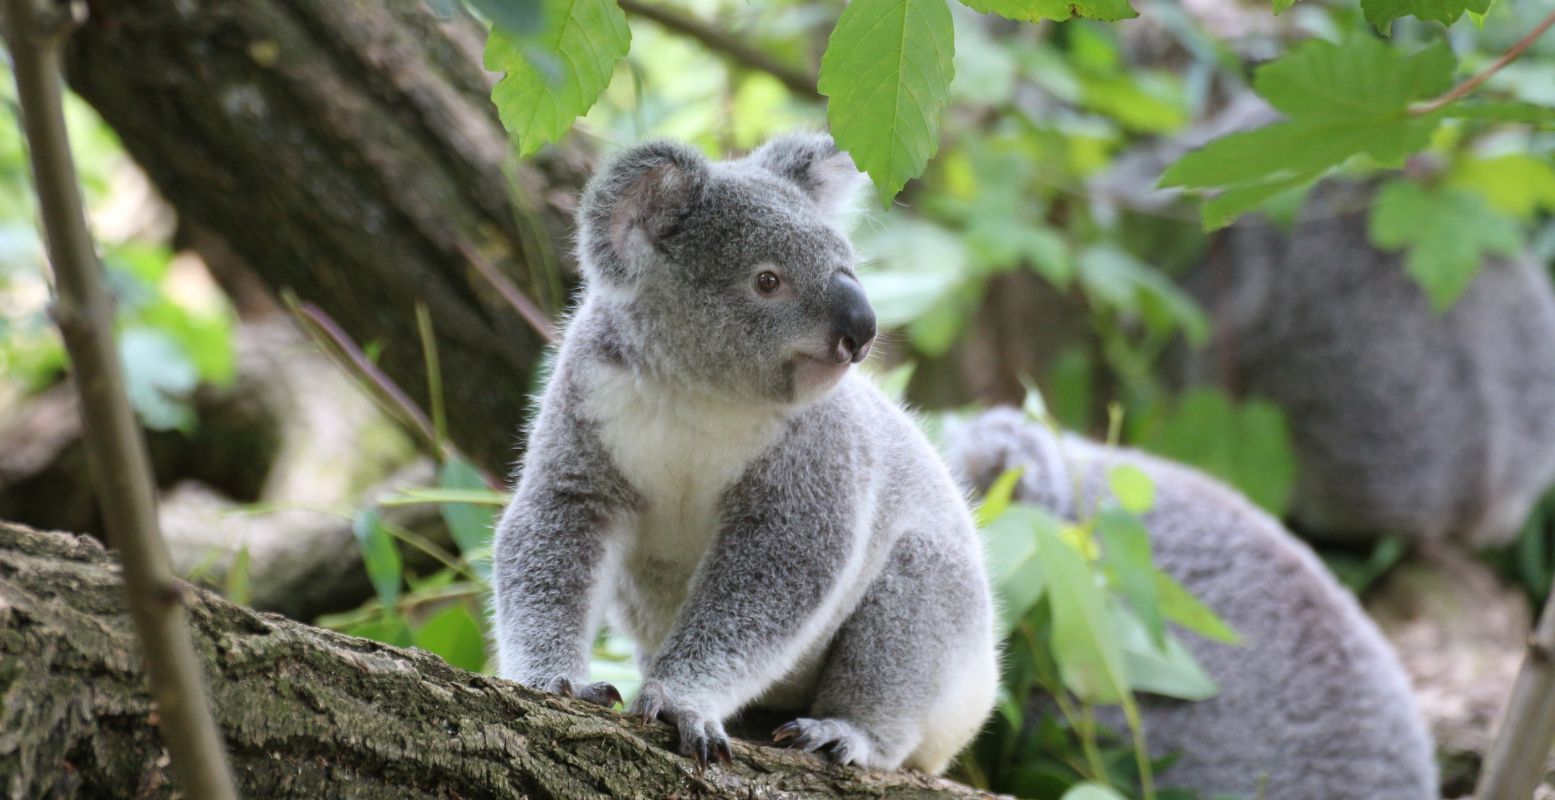 Deze bijzondere dieren haalt Ouwehands Dierenpark naar Nederland. Maak kennis met de koala's! Foto: Pixabay